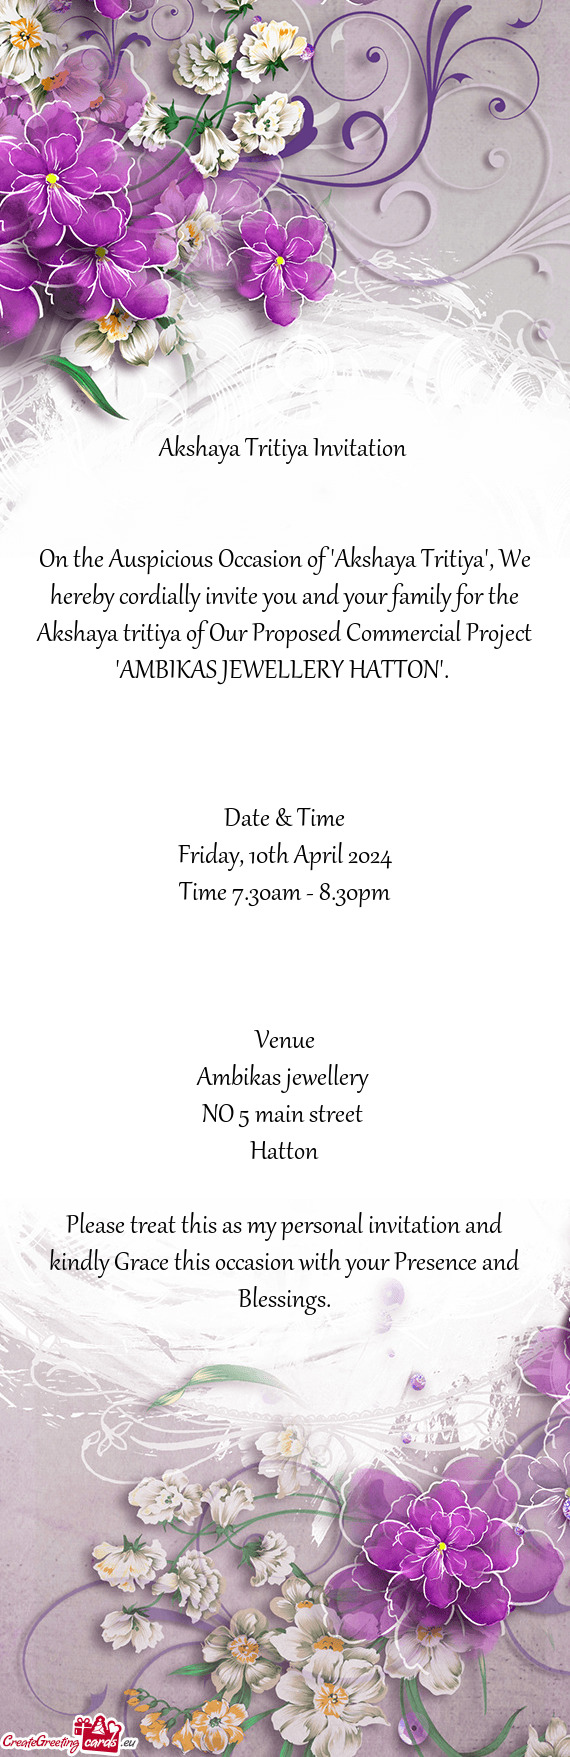 Akshaya Tritiya Invitation